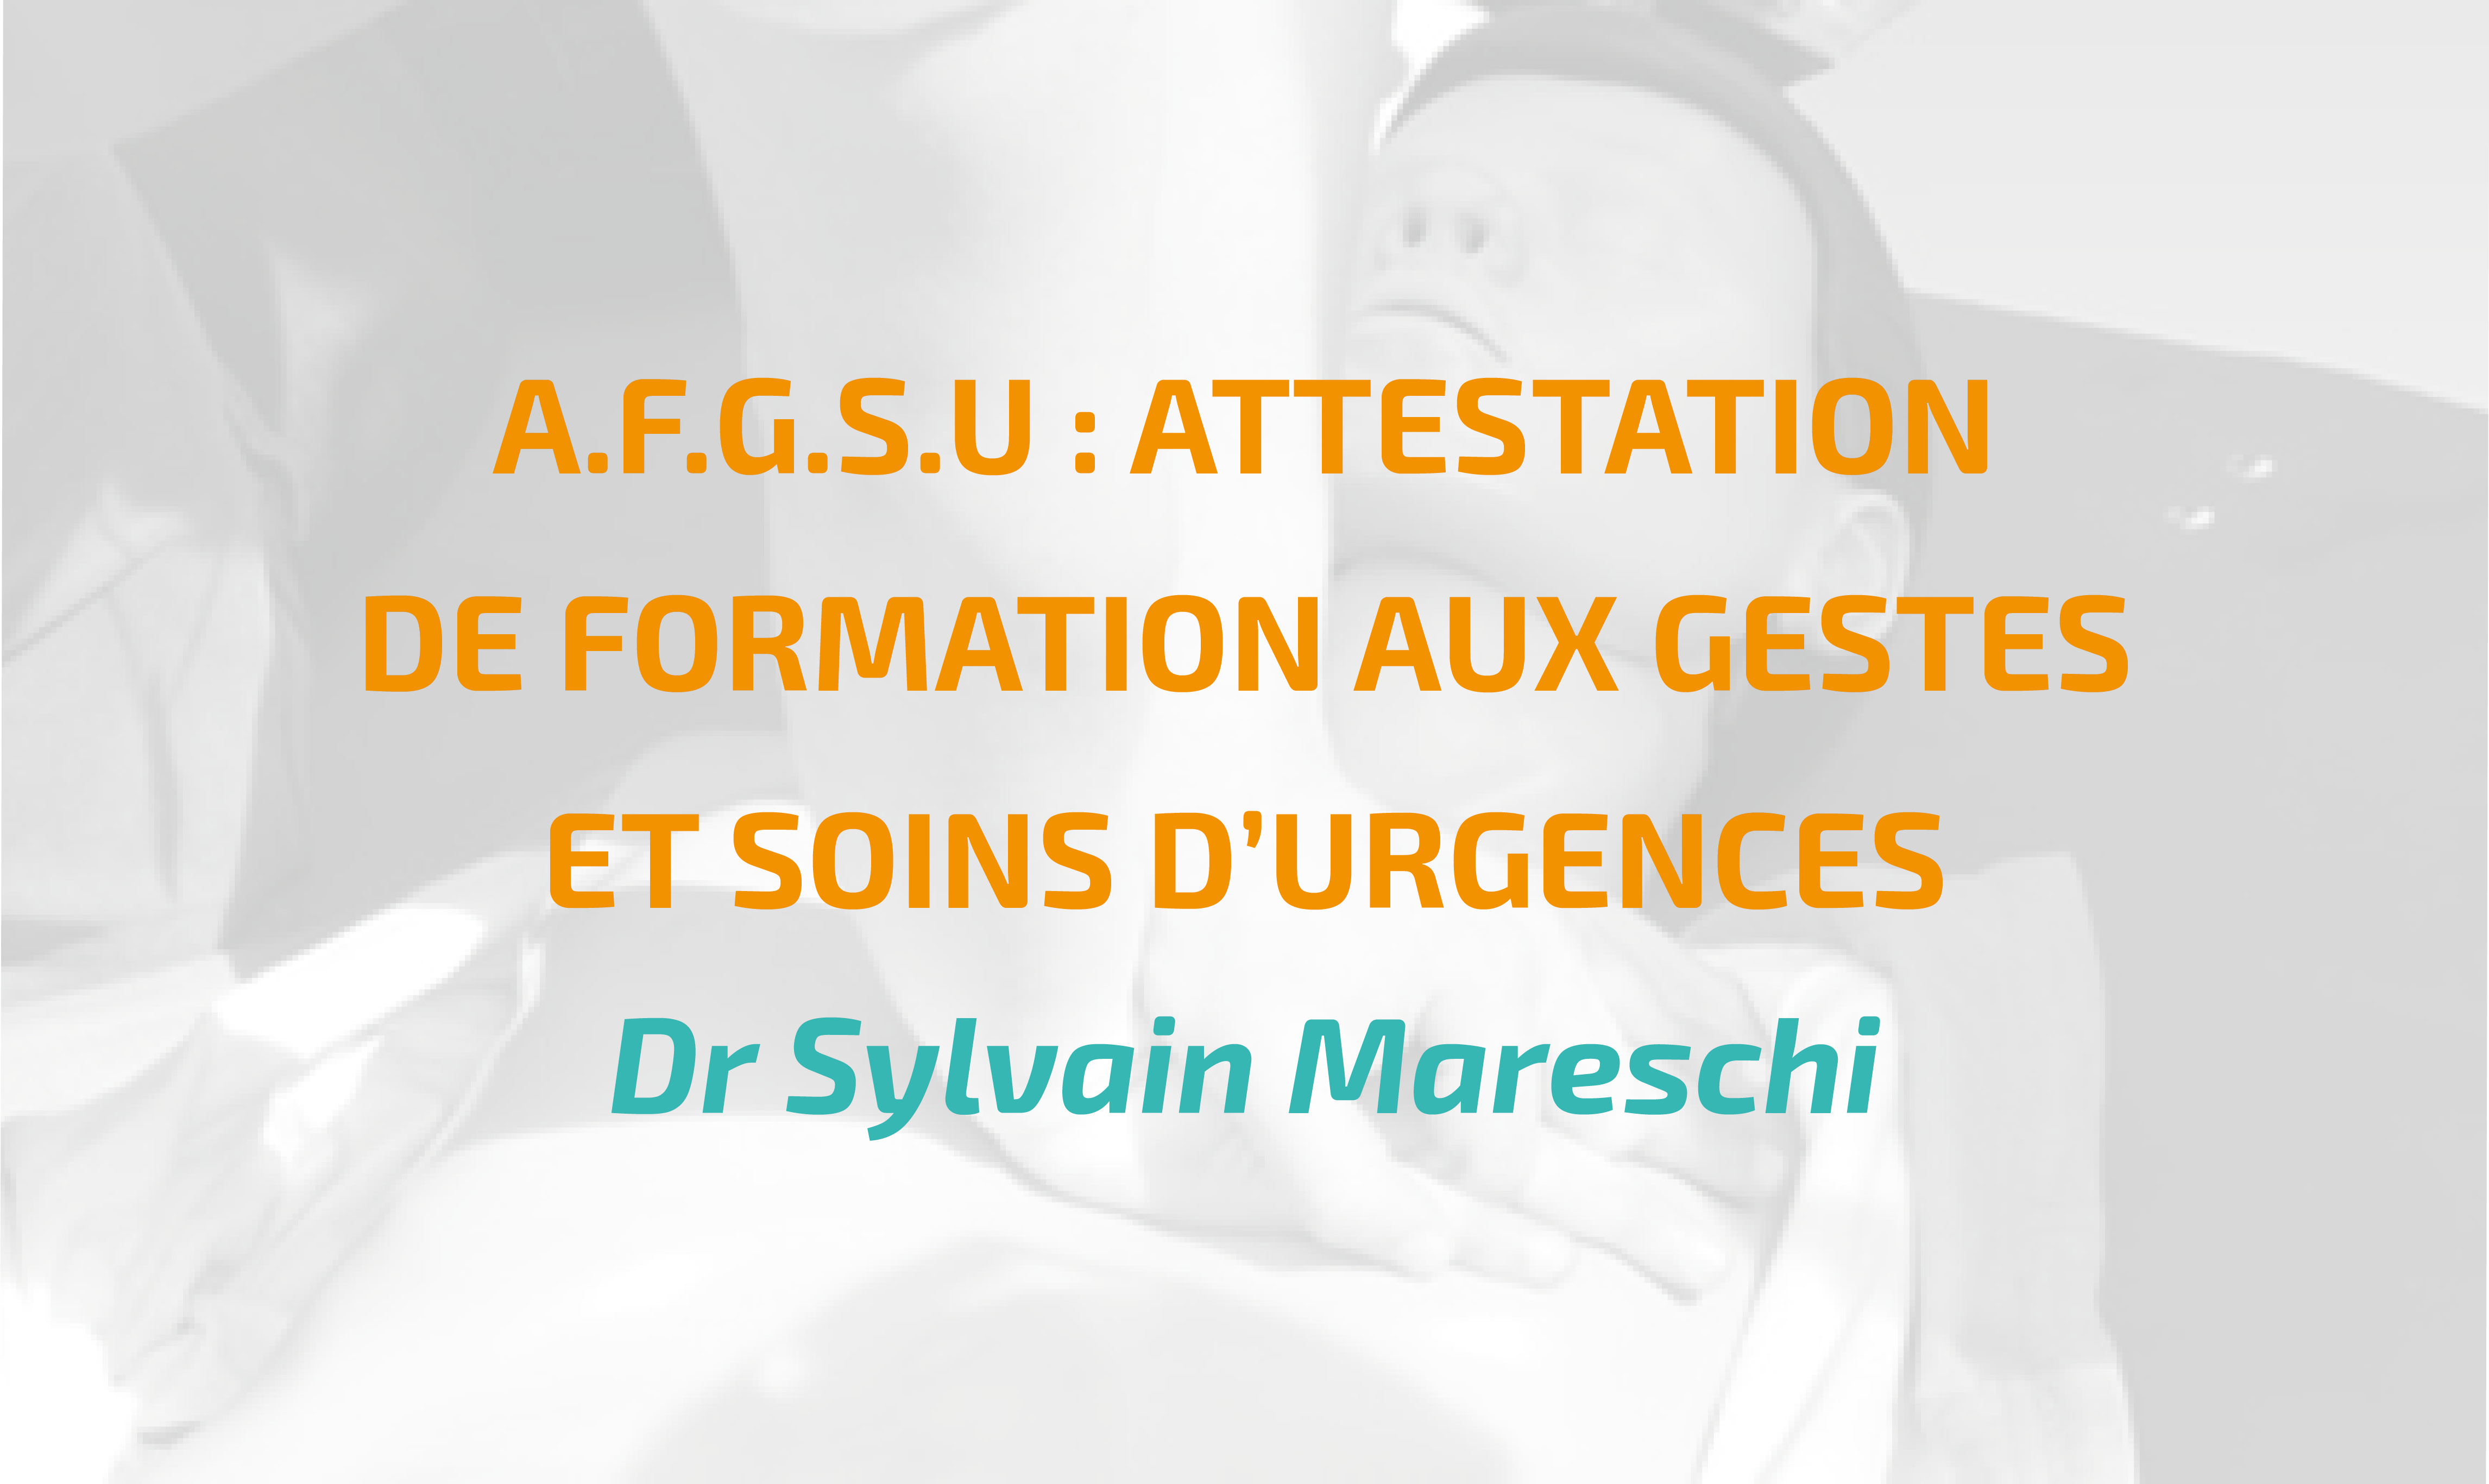 A.F.G.S.U : ATTESTATION DE FORMATIONS AUX GESTES ET SOINS D’URGENCES